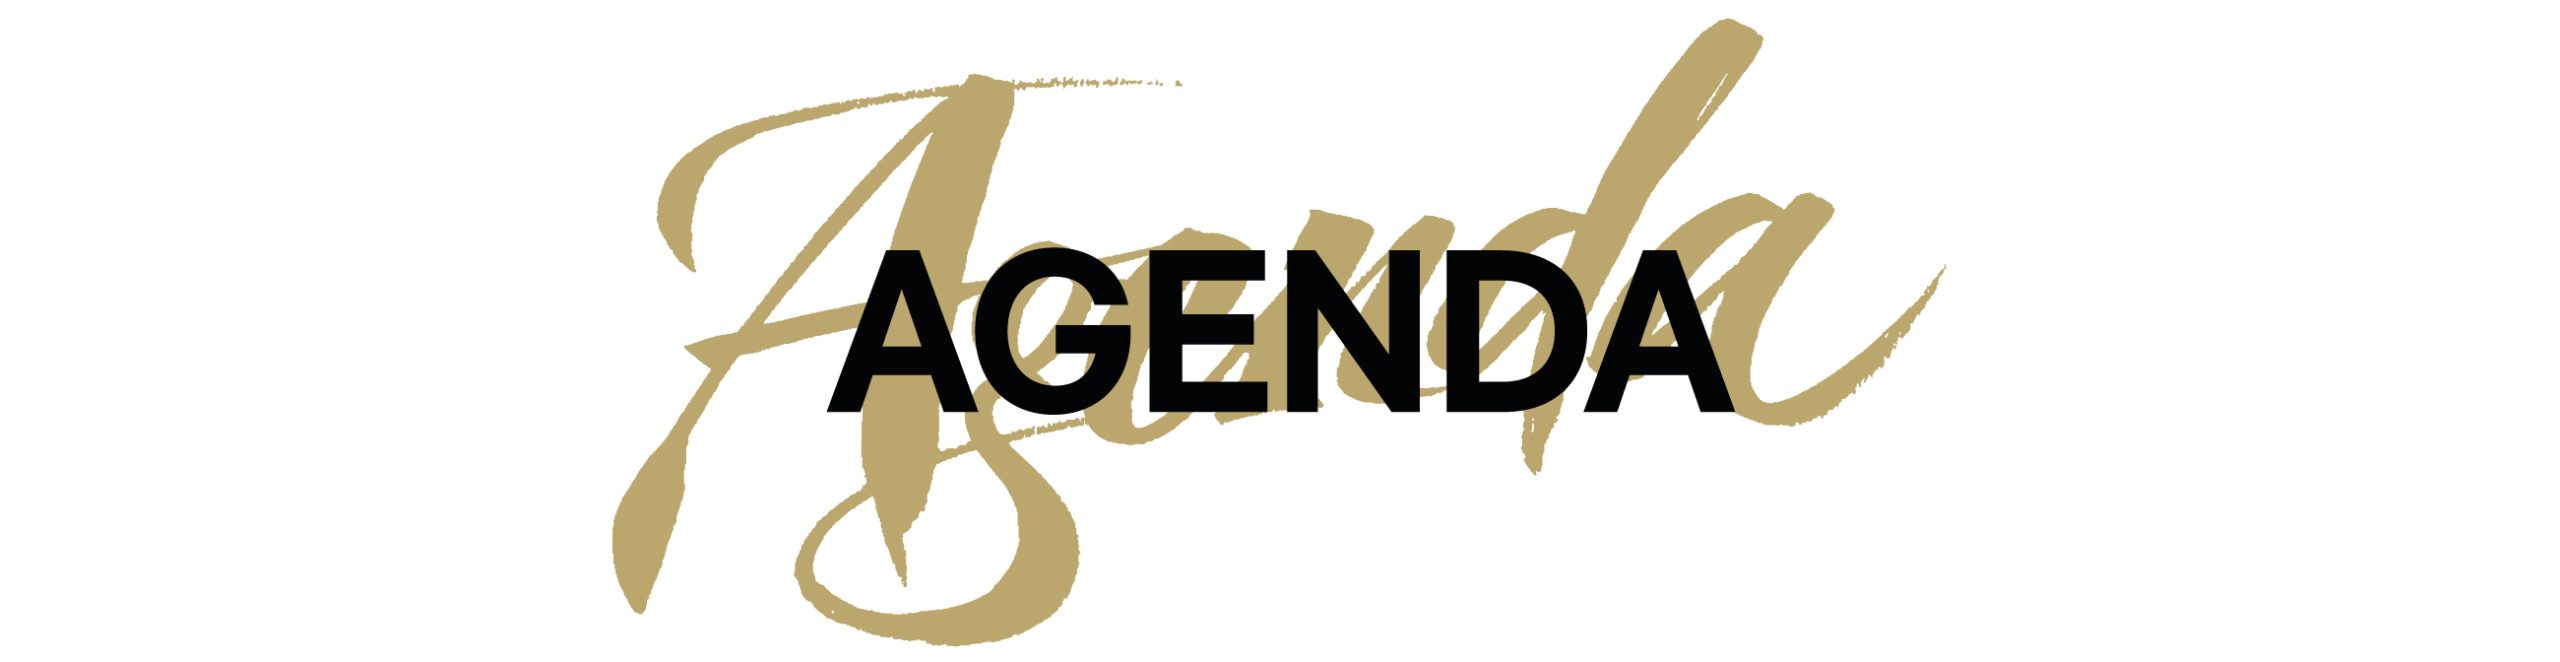 Agenda Banner